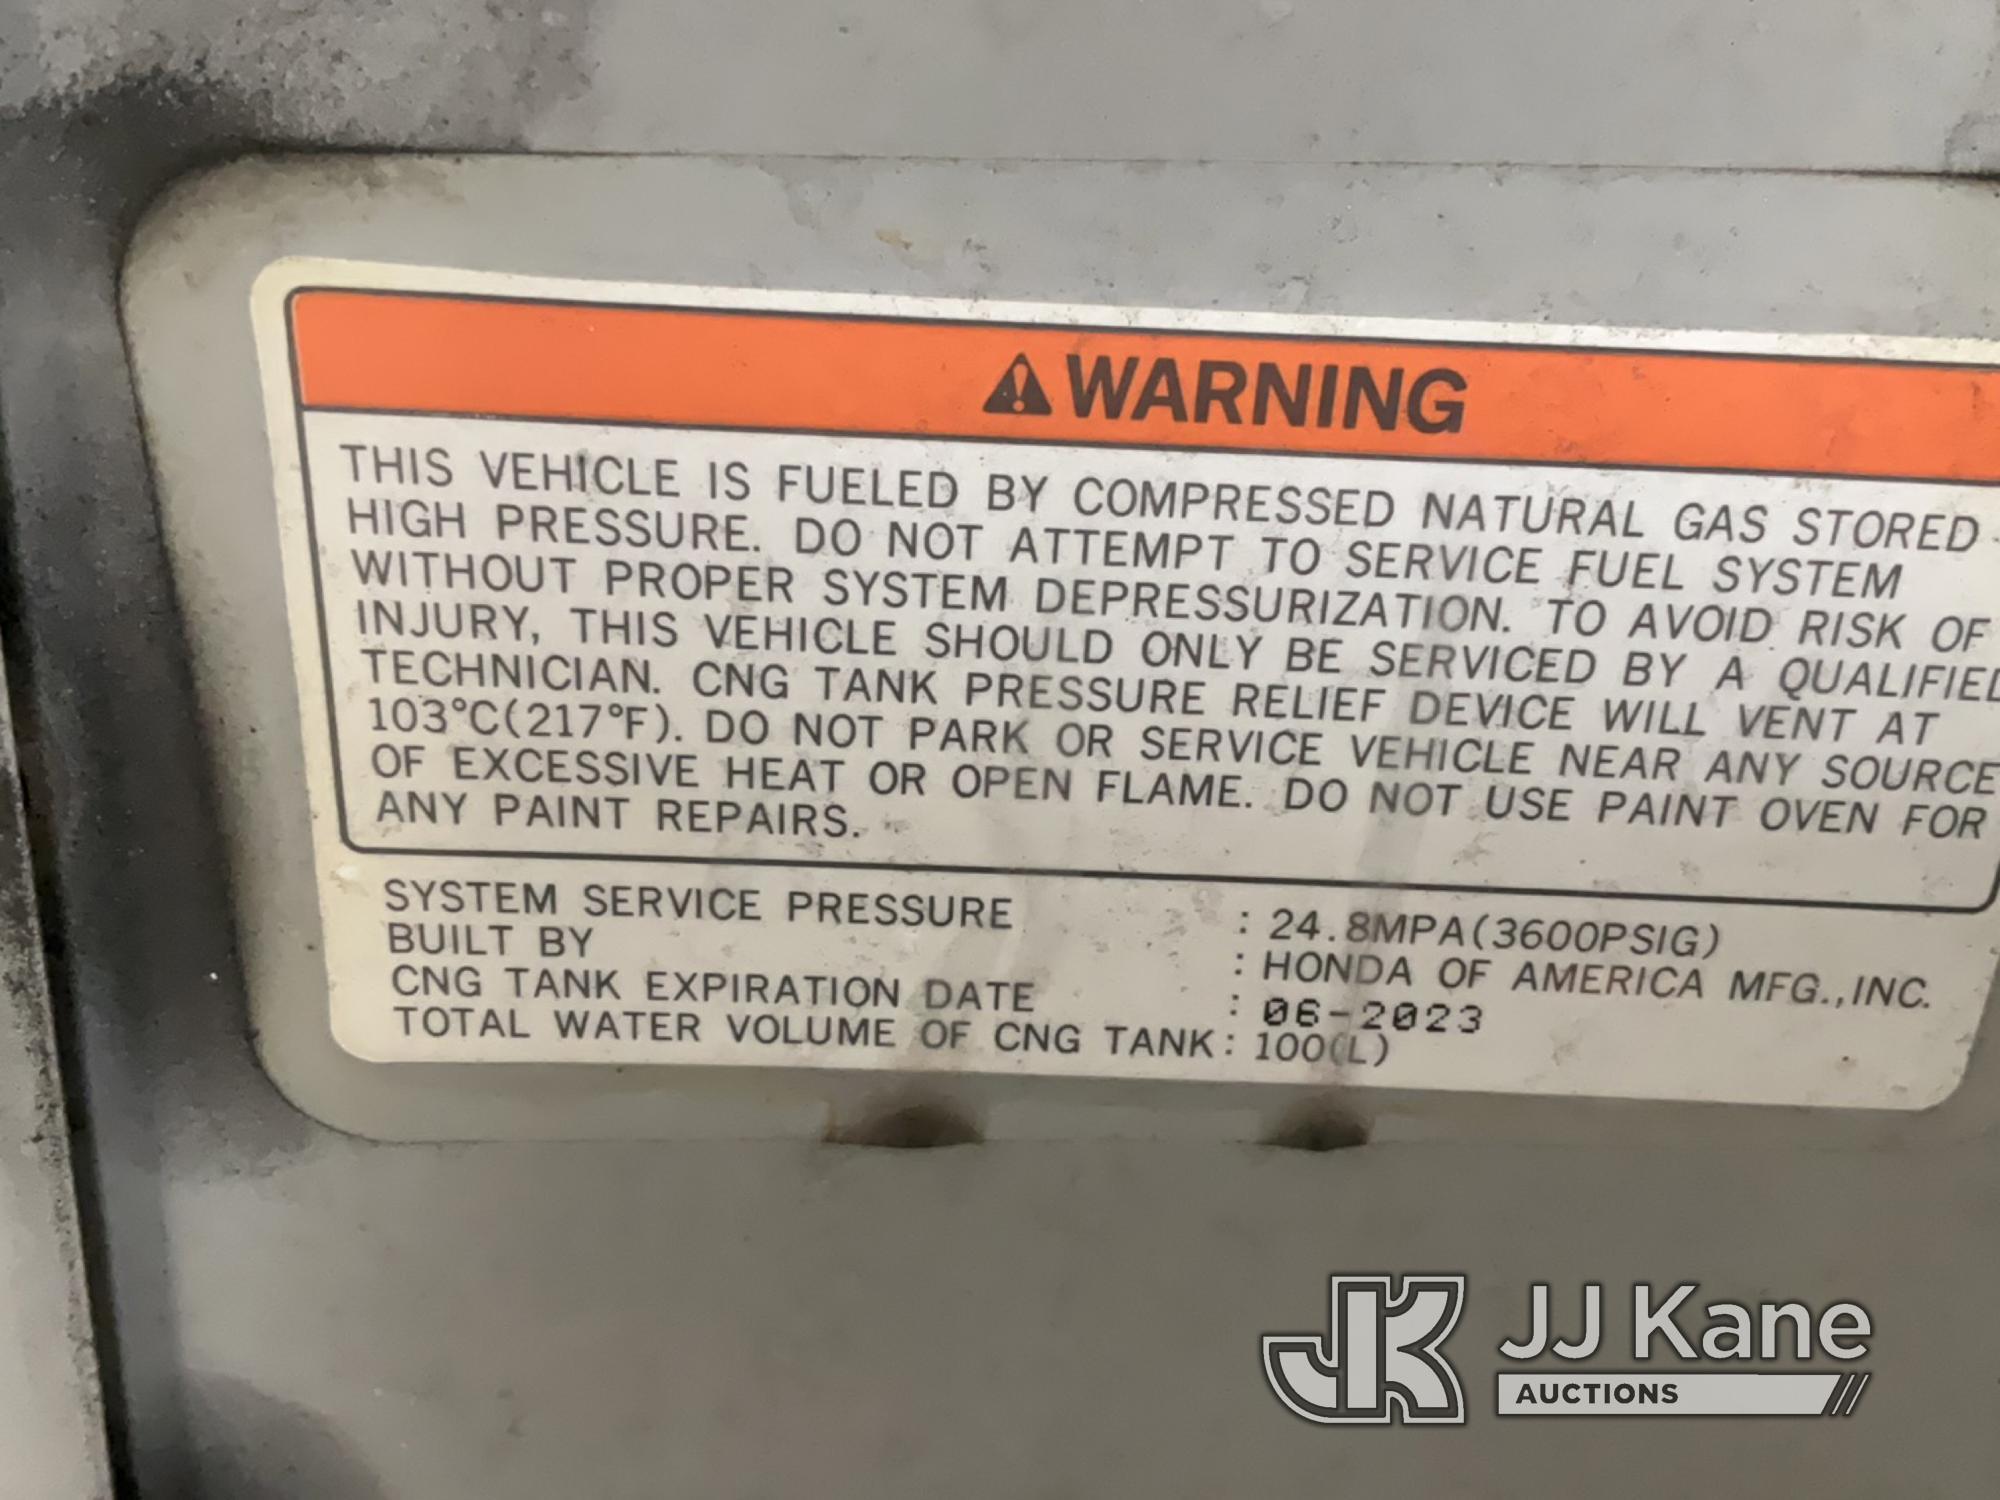 (Jurupa Valley, CA) 2009 Honda Civic GX 4-Door Sedan Runs & Moves, Expired CNG Tank 2022